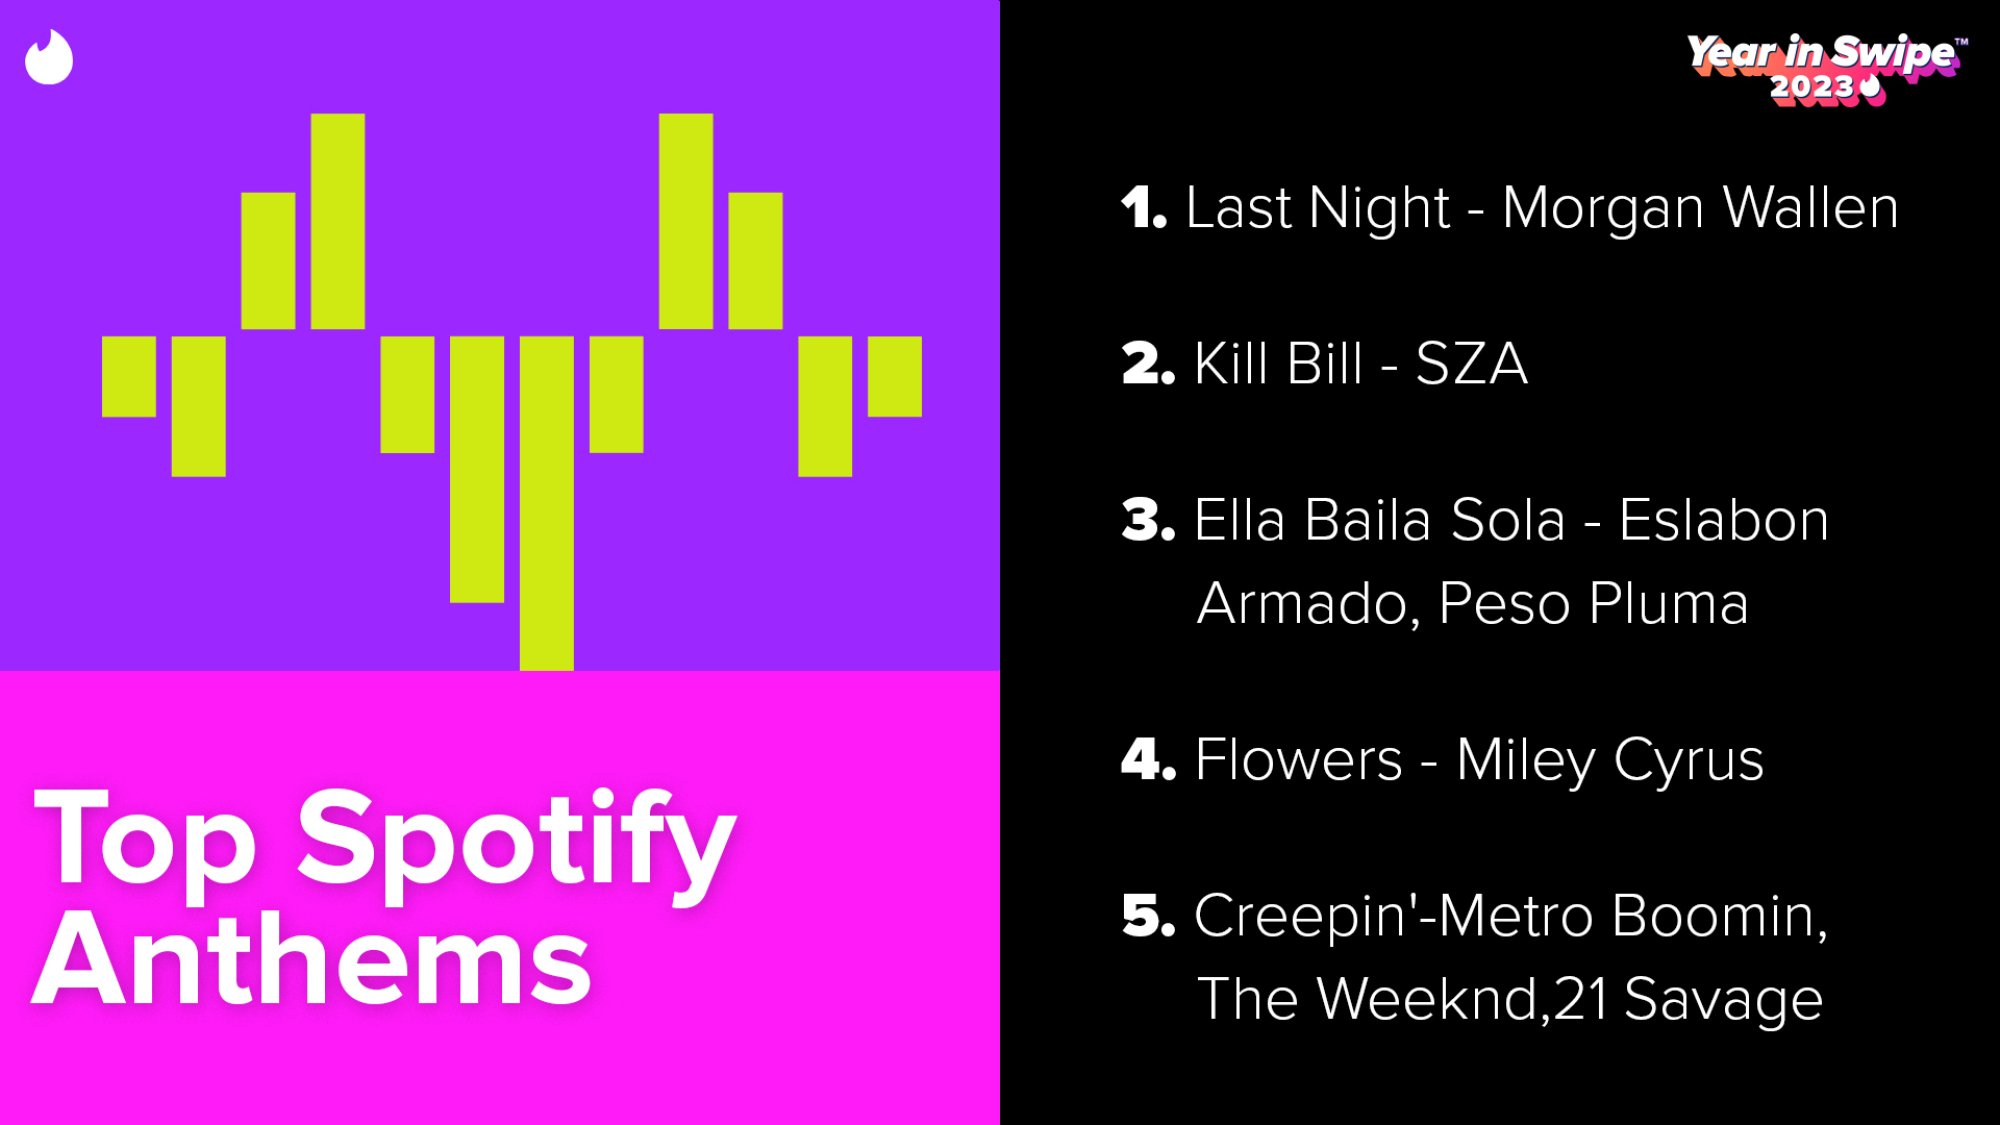 Une infographie montrant les meilleurs hymnes Spotify sur Twitter en 2023. Par ordre décroissant, ils sont : "La nuit dernière" par Morgan Wallen; "Kill Bill" par SZA; "Ella Baila Sola" par Eslabon Armado, Peso Pluma ; "Fleurs" par Miley Cyrus ;  et "Infiltrer'" par Metro Boomin, The Weeknd, 21 Savage.